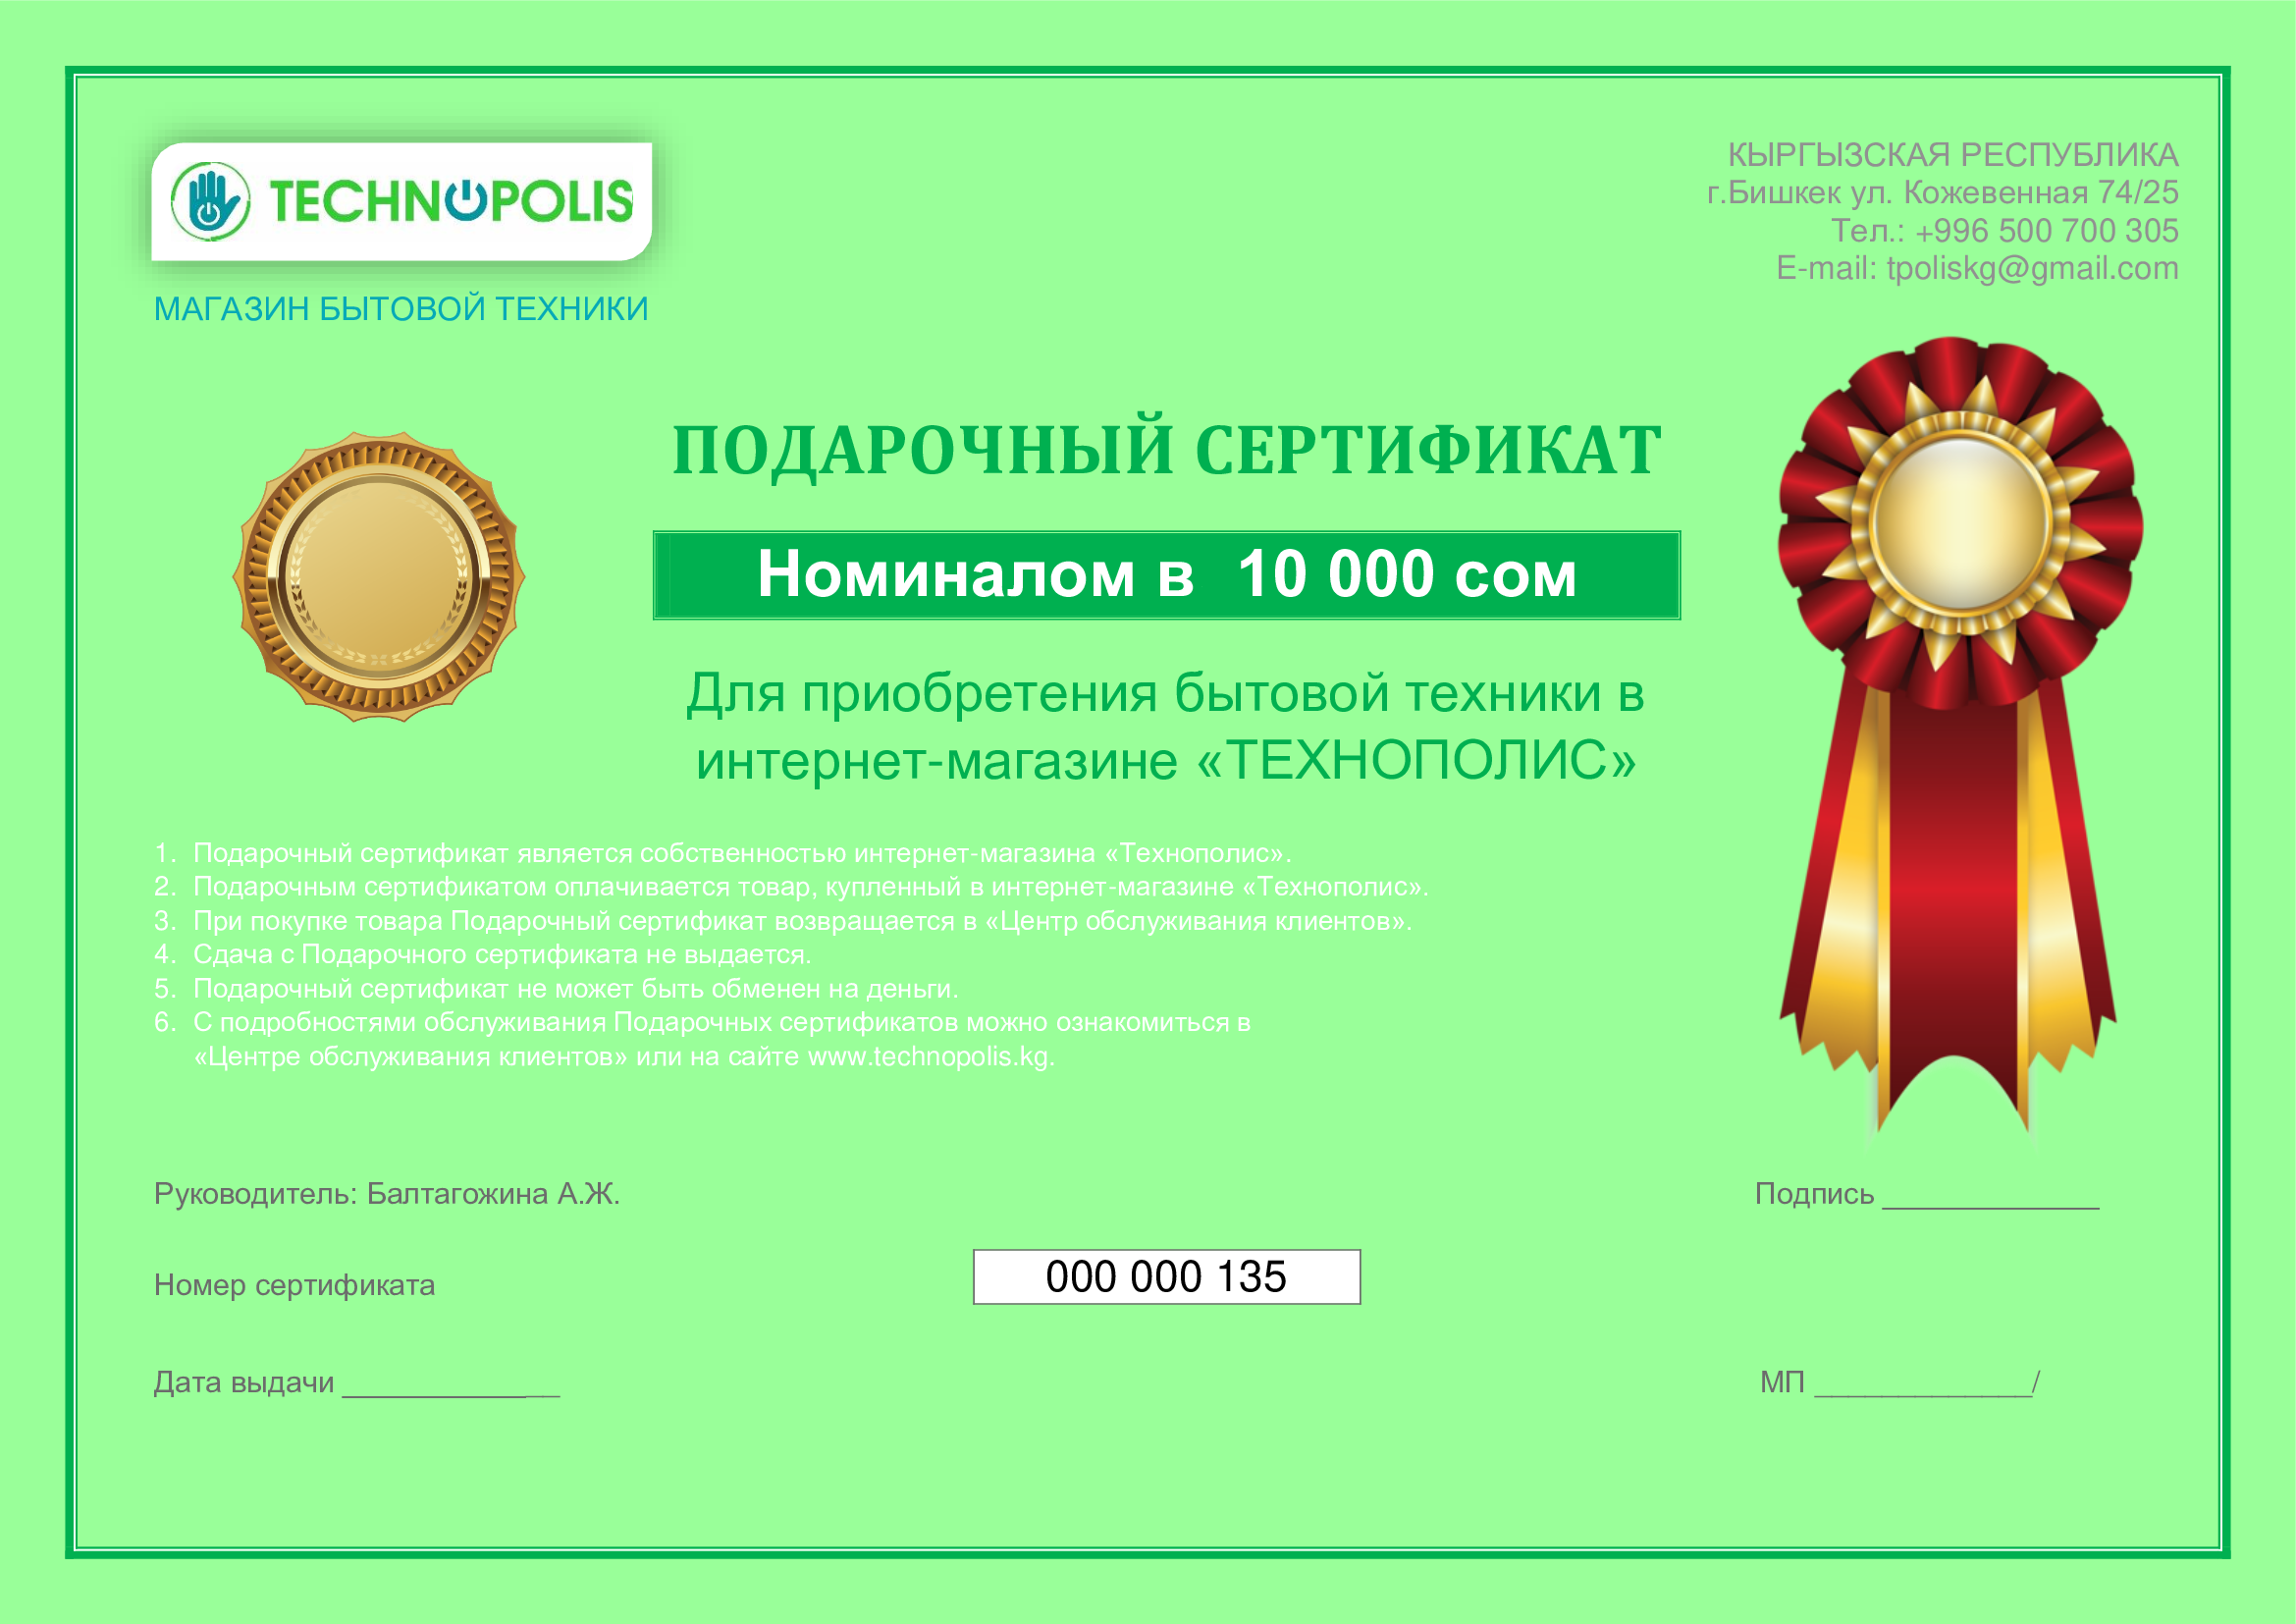 Подарочный сертификат на бытовую технику от Технополис